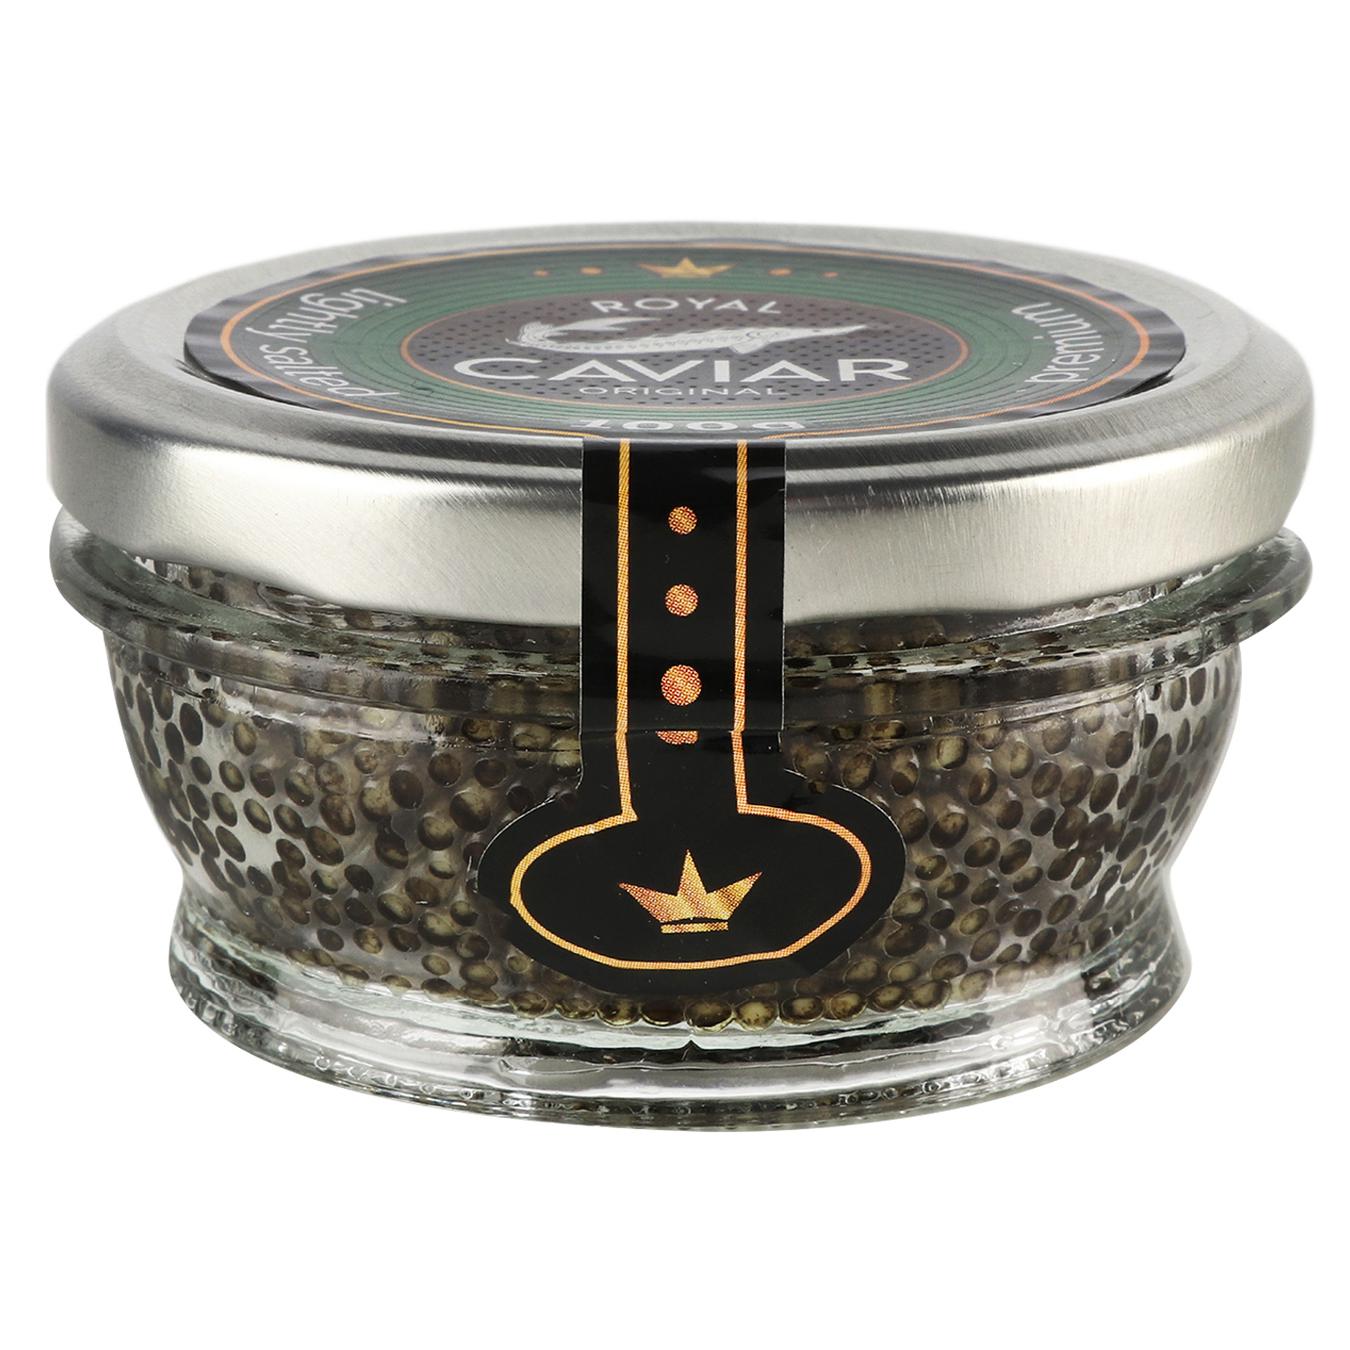 Икра осетровая Royal Caviar Premium зернистая 100г